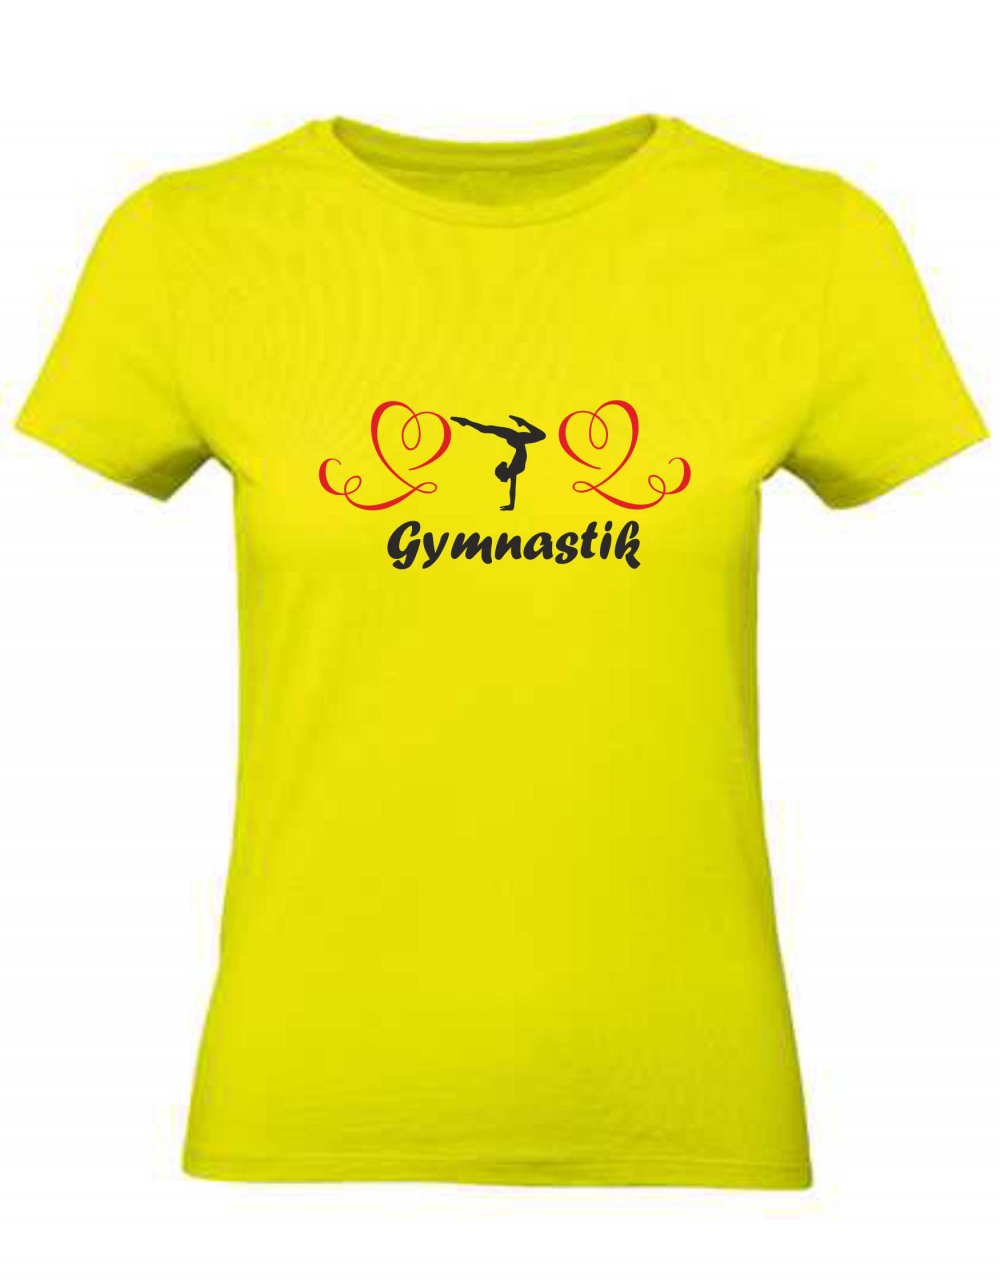 Ladyshirt mit Gymnastikmotiv